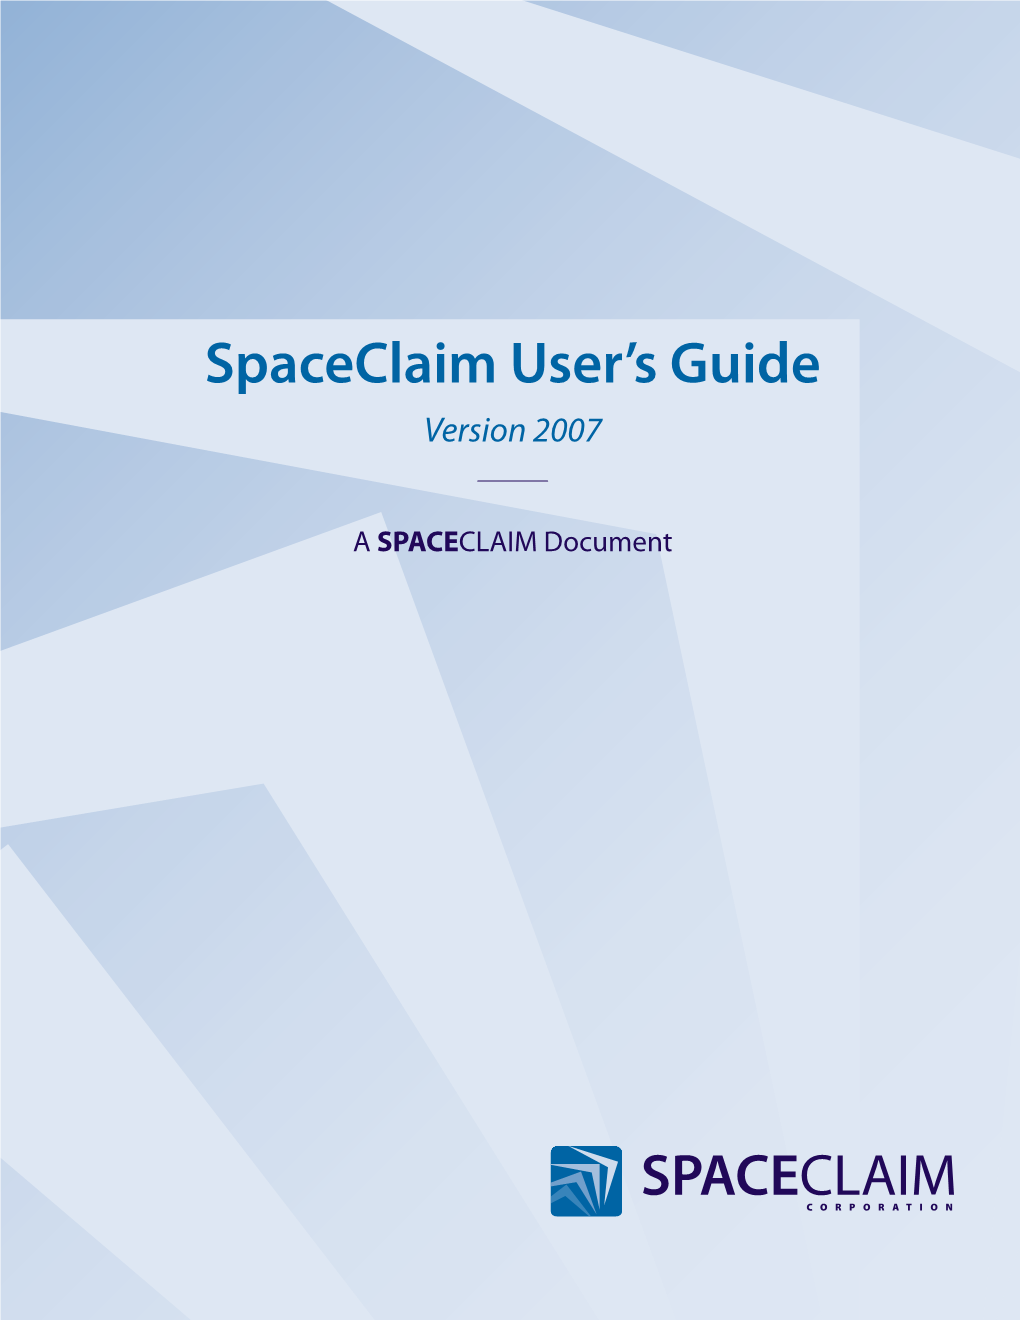 Spaceclaim User's Guide